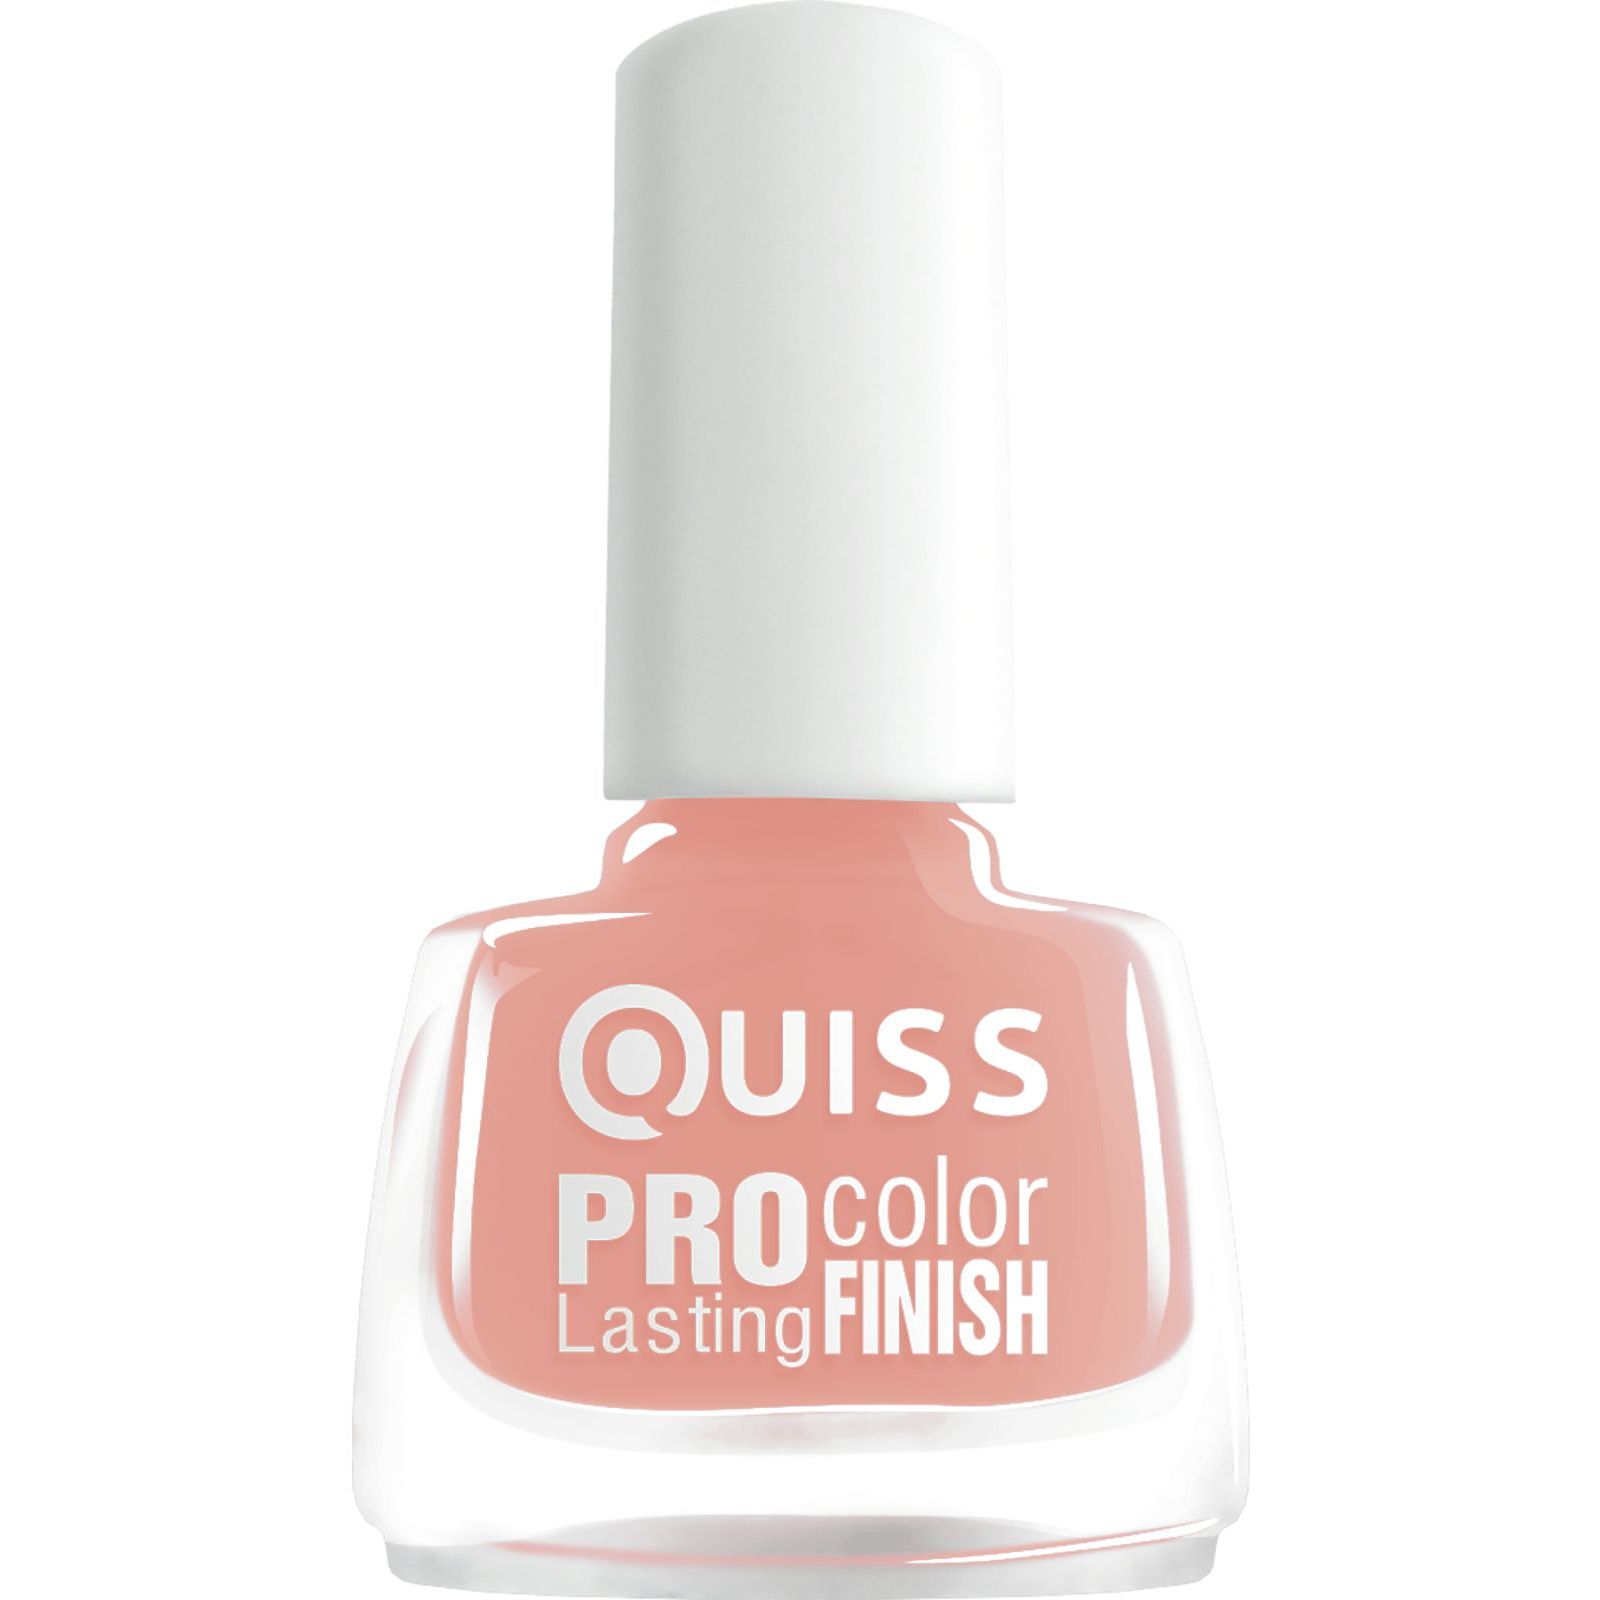 Лак для ногтей Quiss Pro Color Lasting Finish тон 004, 6 мл - фото 1